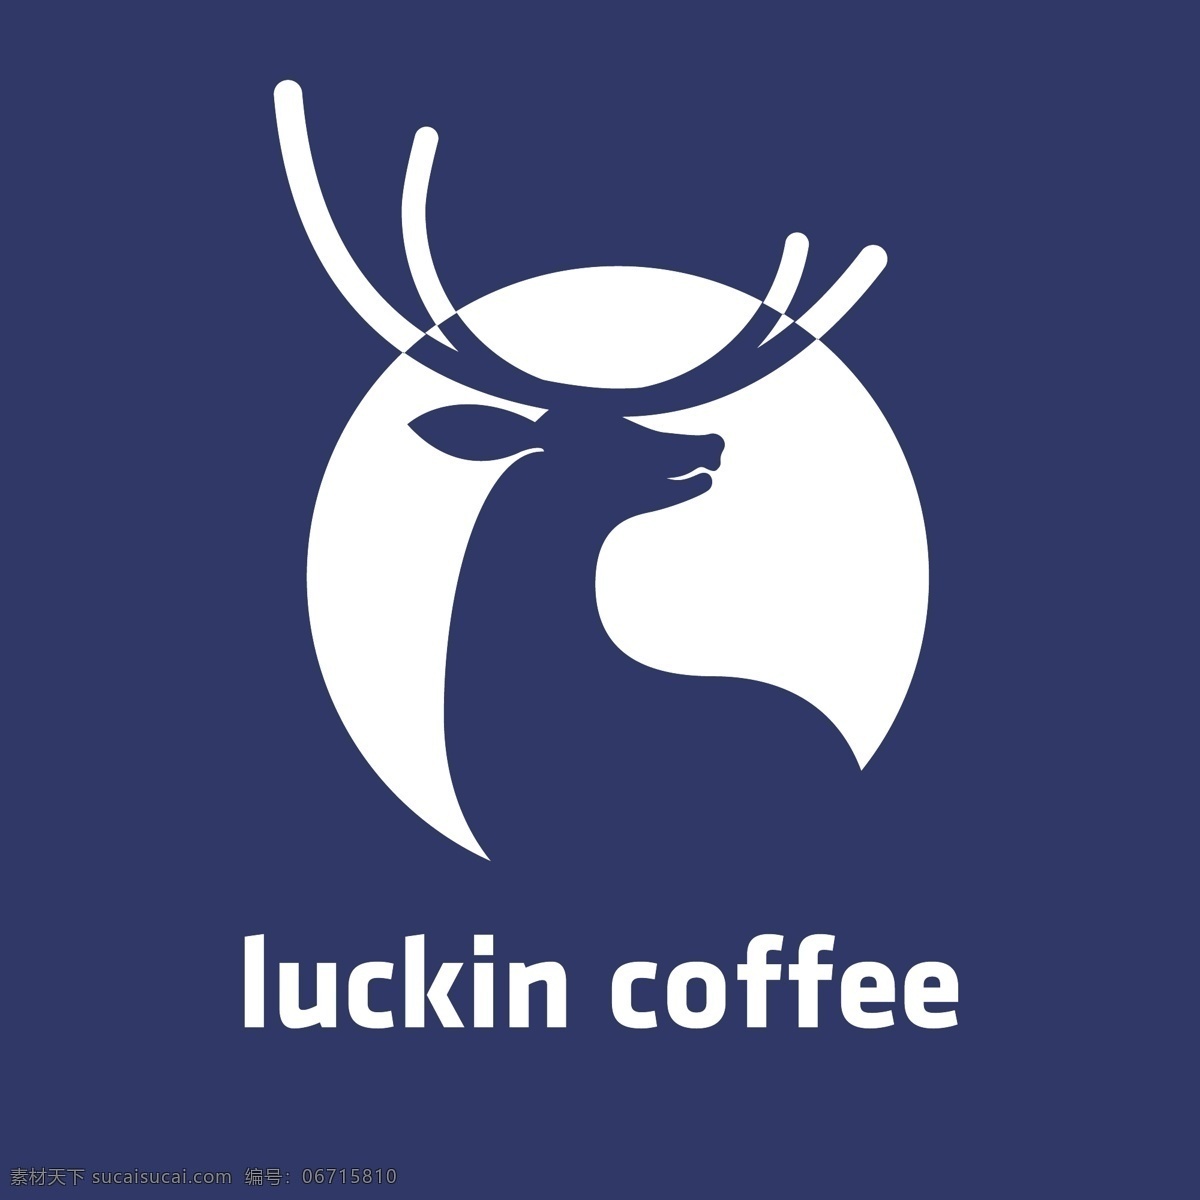 瑞 幸 咖啡 logo 瑞幸咖啡 瑞幸 瑞幸logo luckin 咖啡店 标志图标 公共标识标志